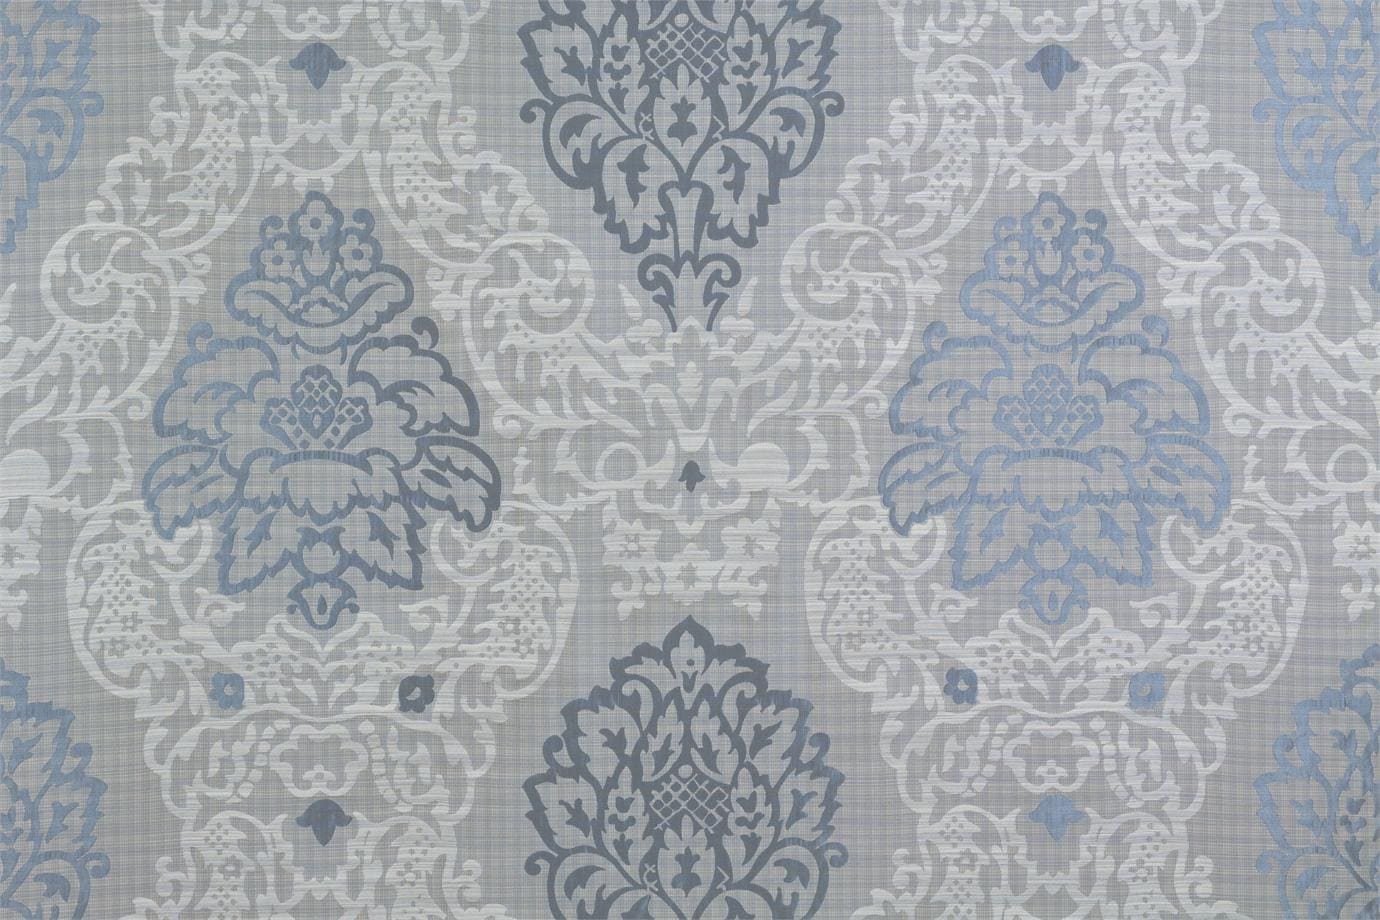 J1594 MEO PATACCA 007 Acqua home decoration fabric